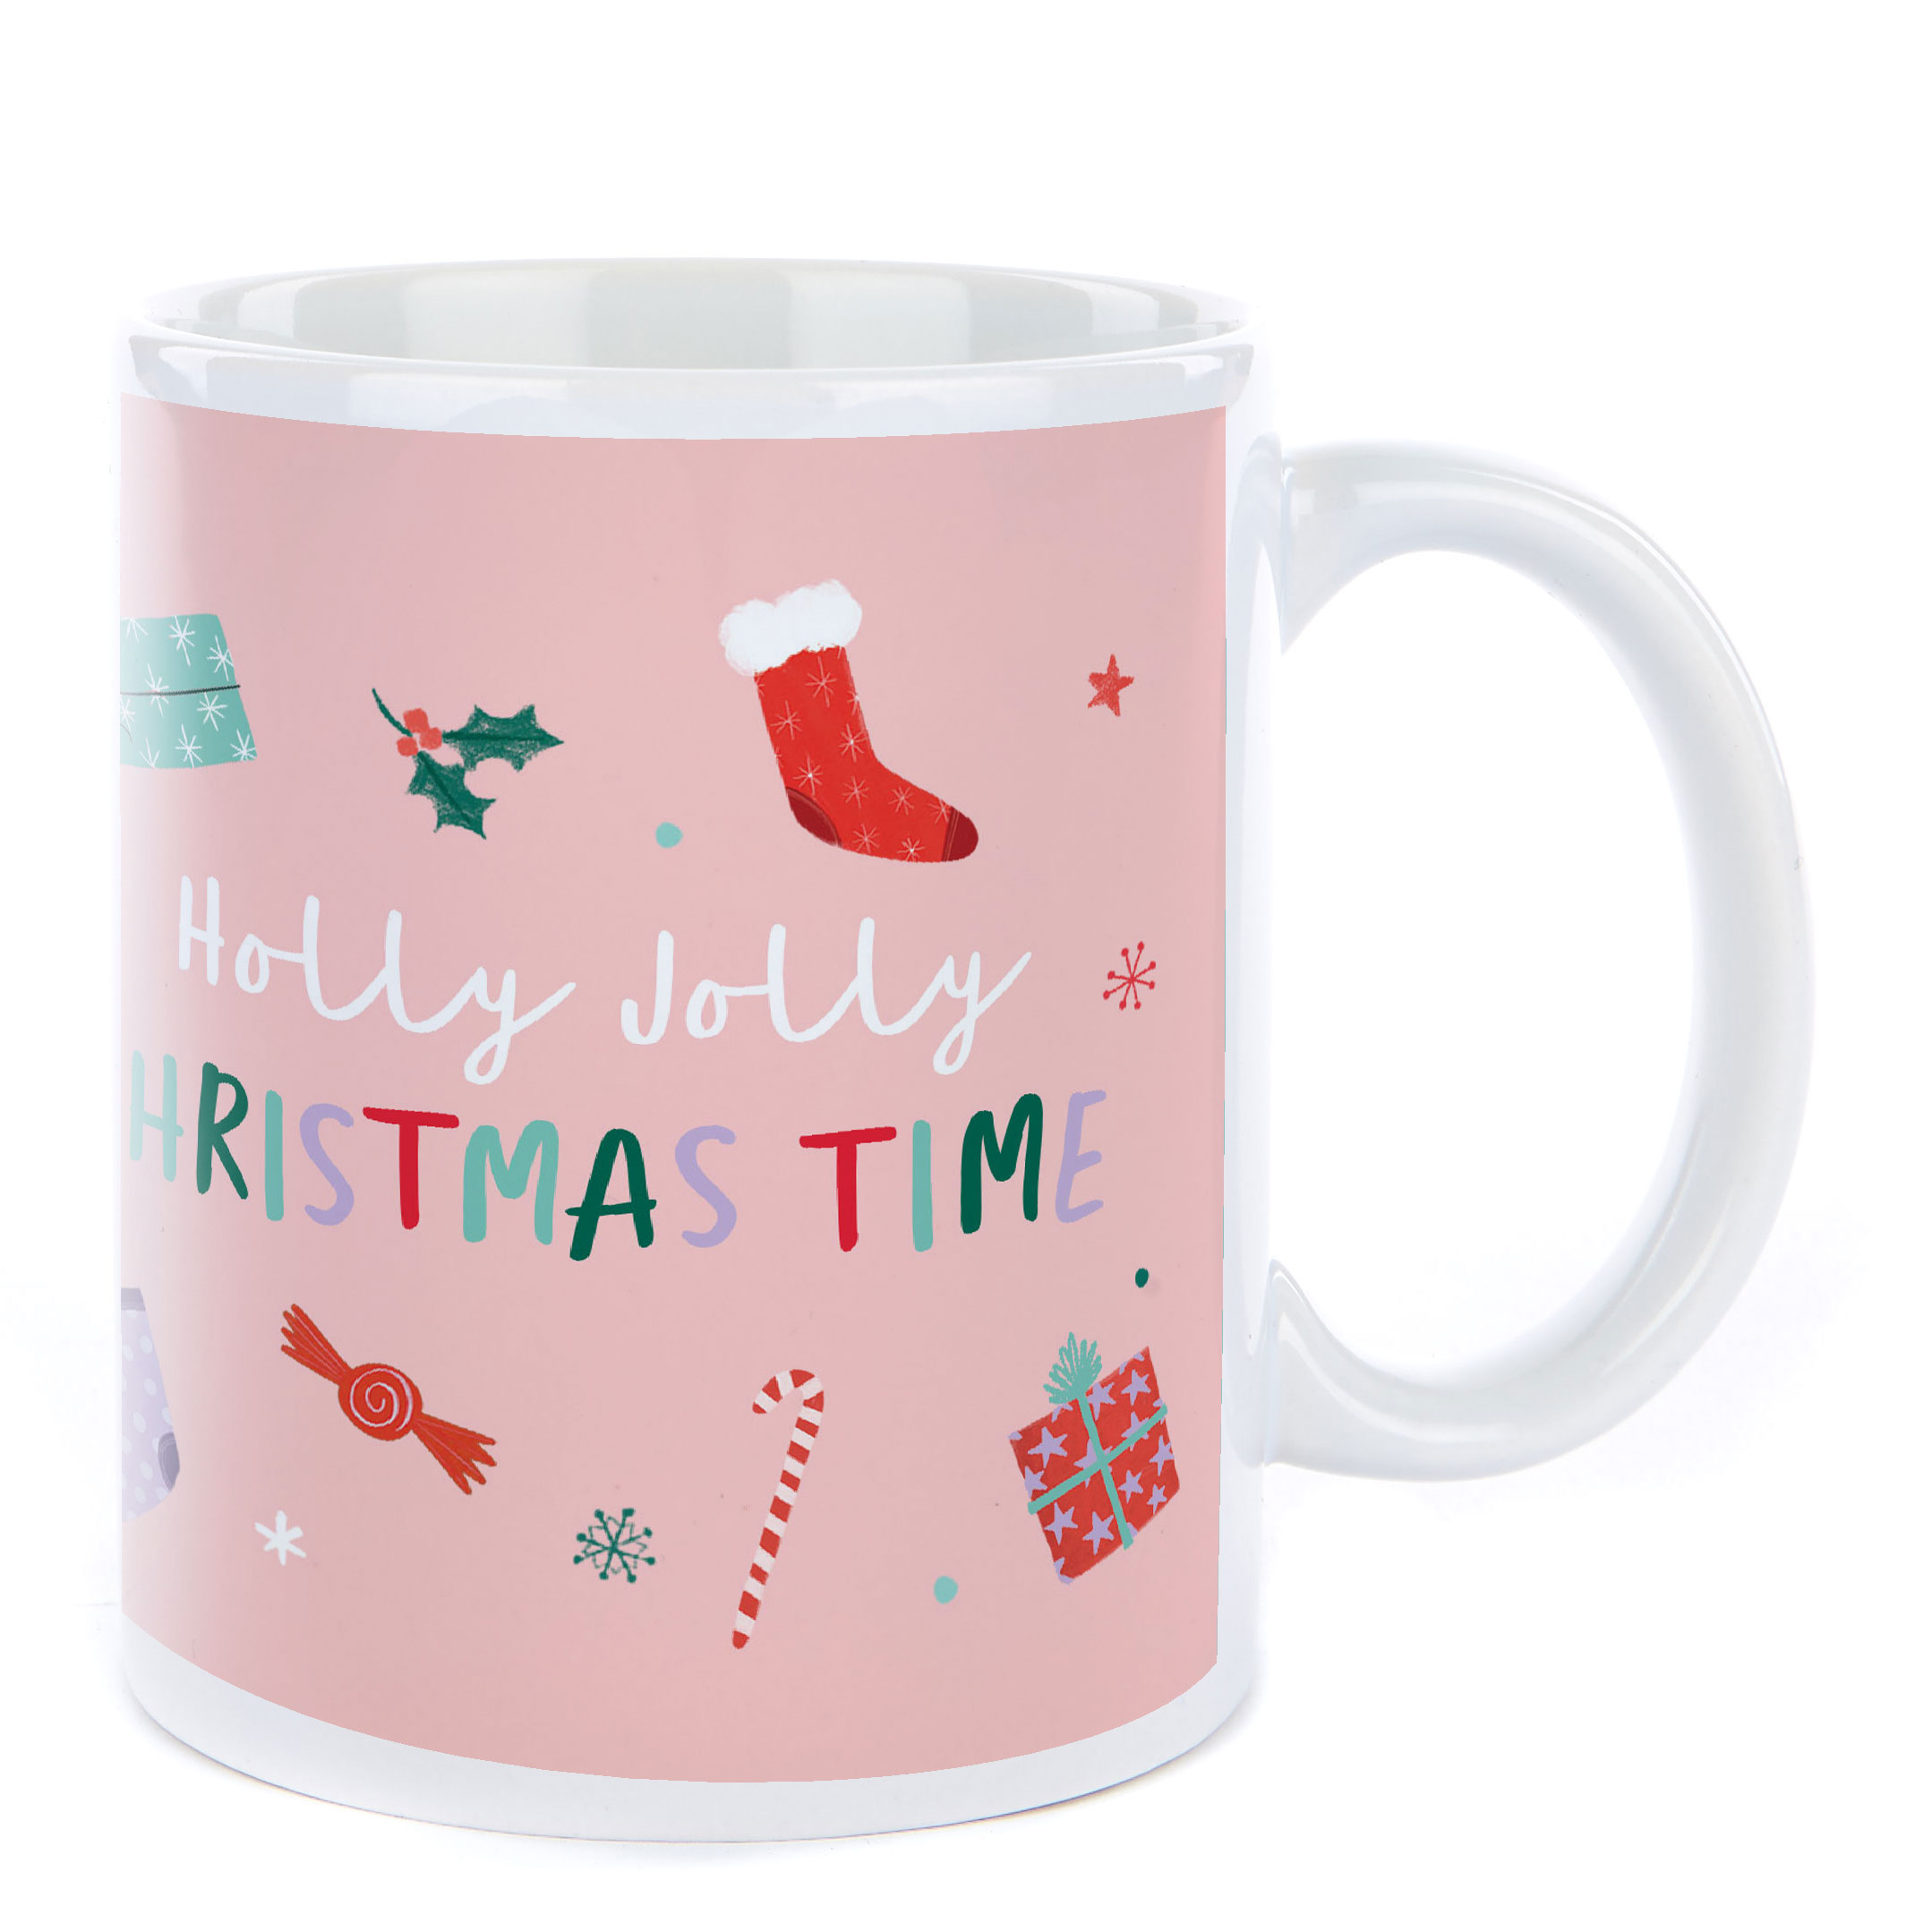 Personalised Christmas Mug - Holly Jolly Christmas Time